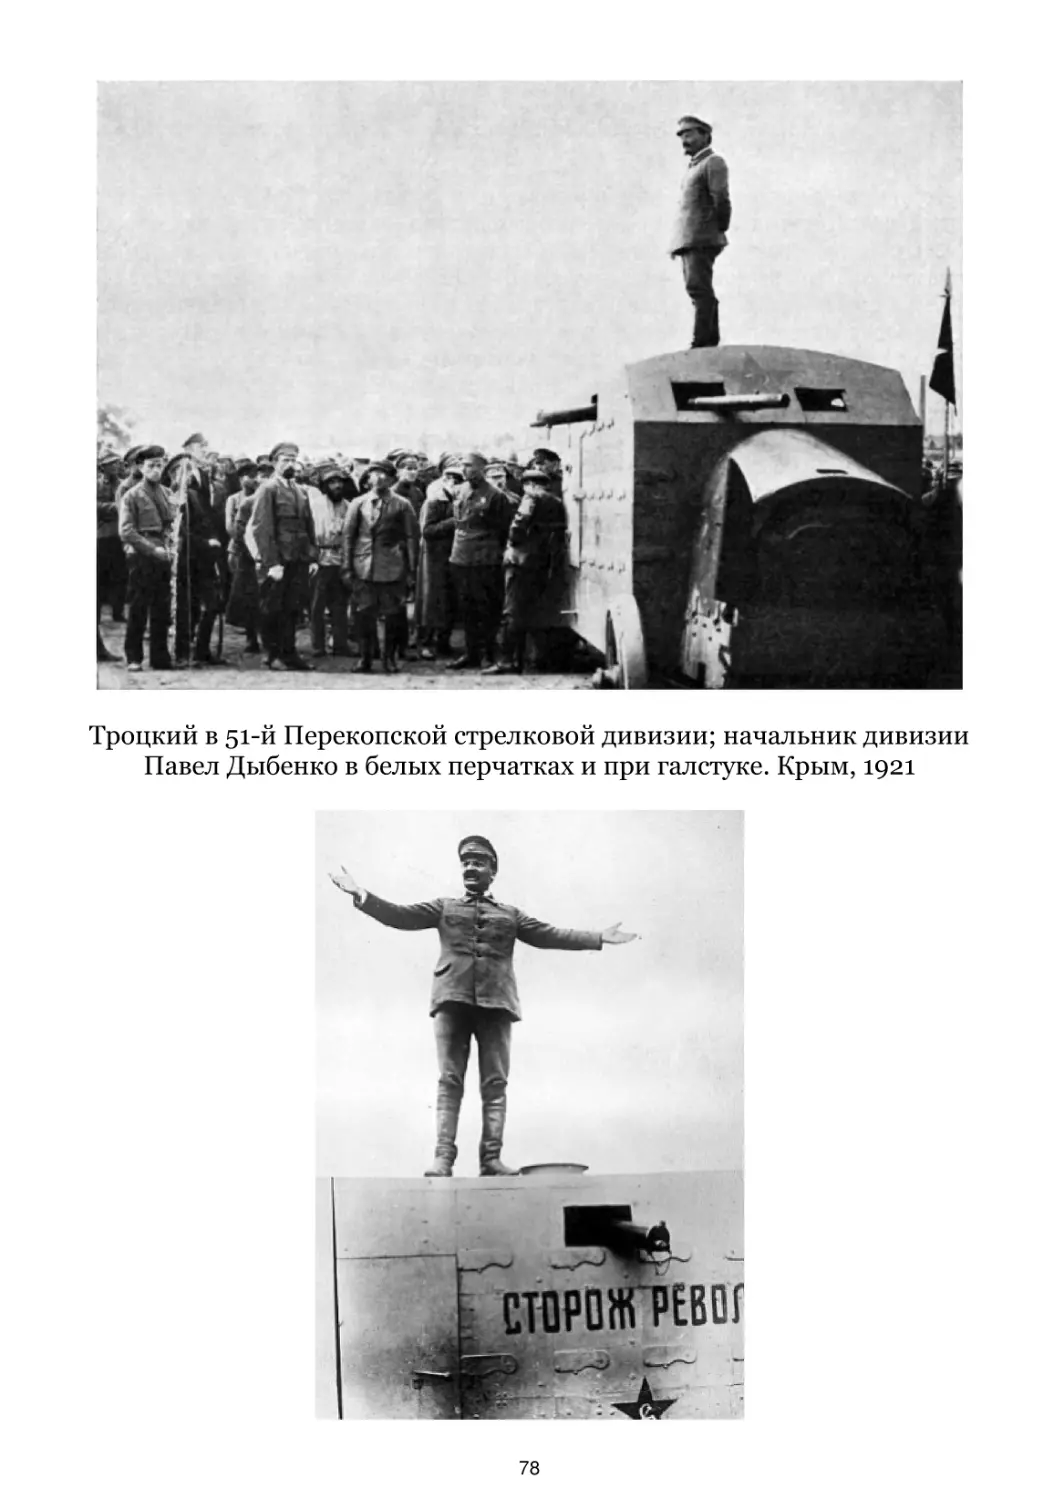 Троцкий в 51-й Перекопской стрелковой дивизии. Крым, 1921